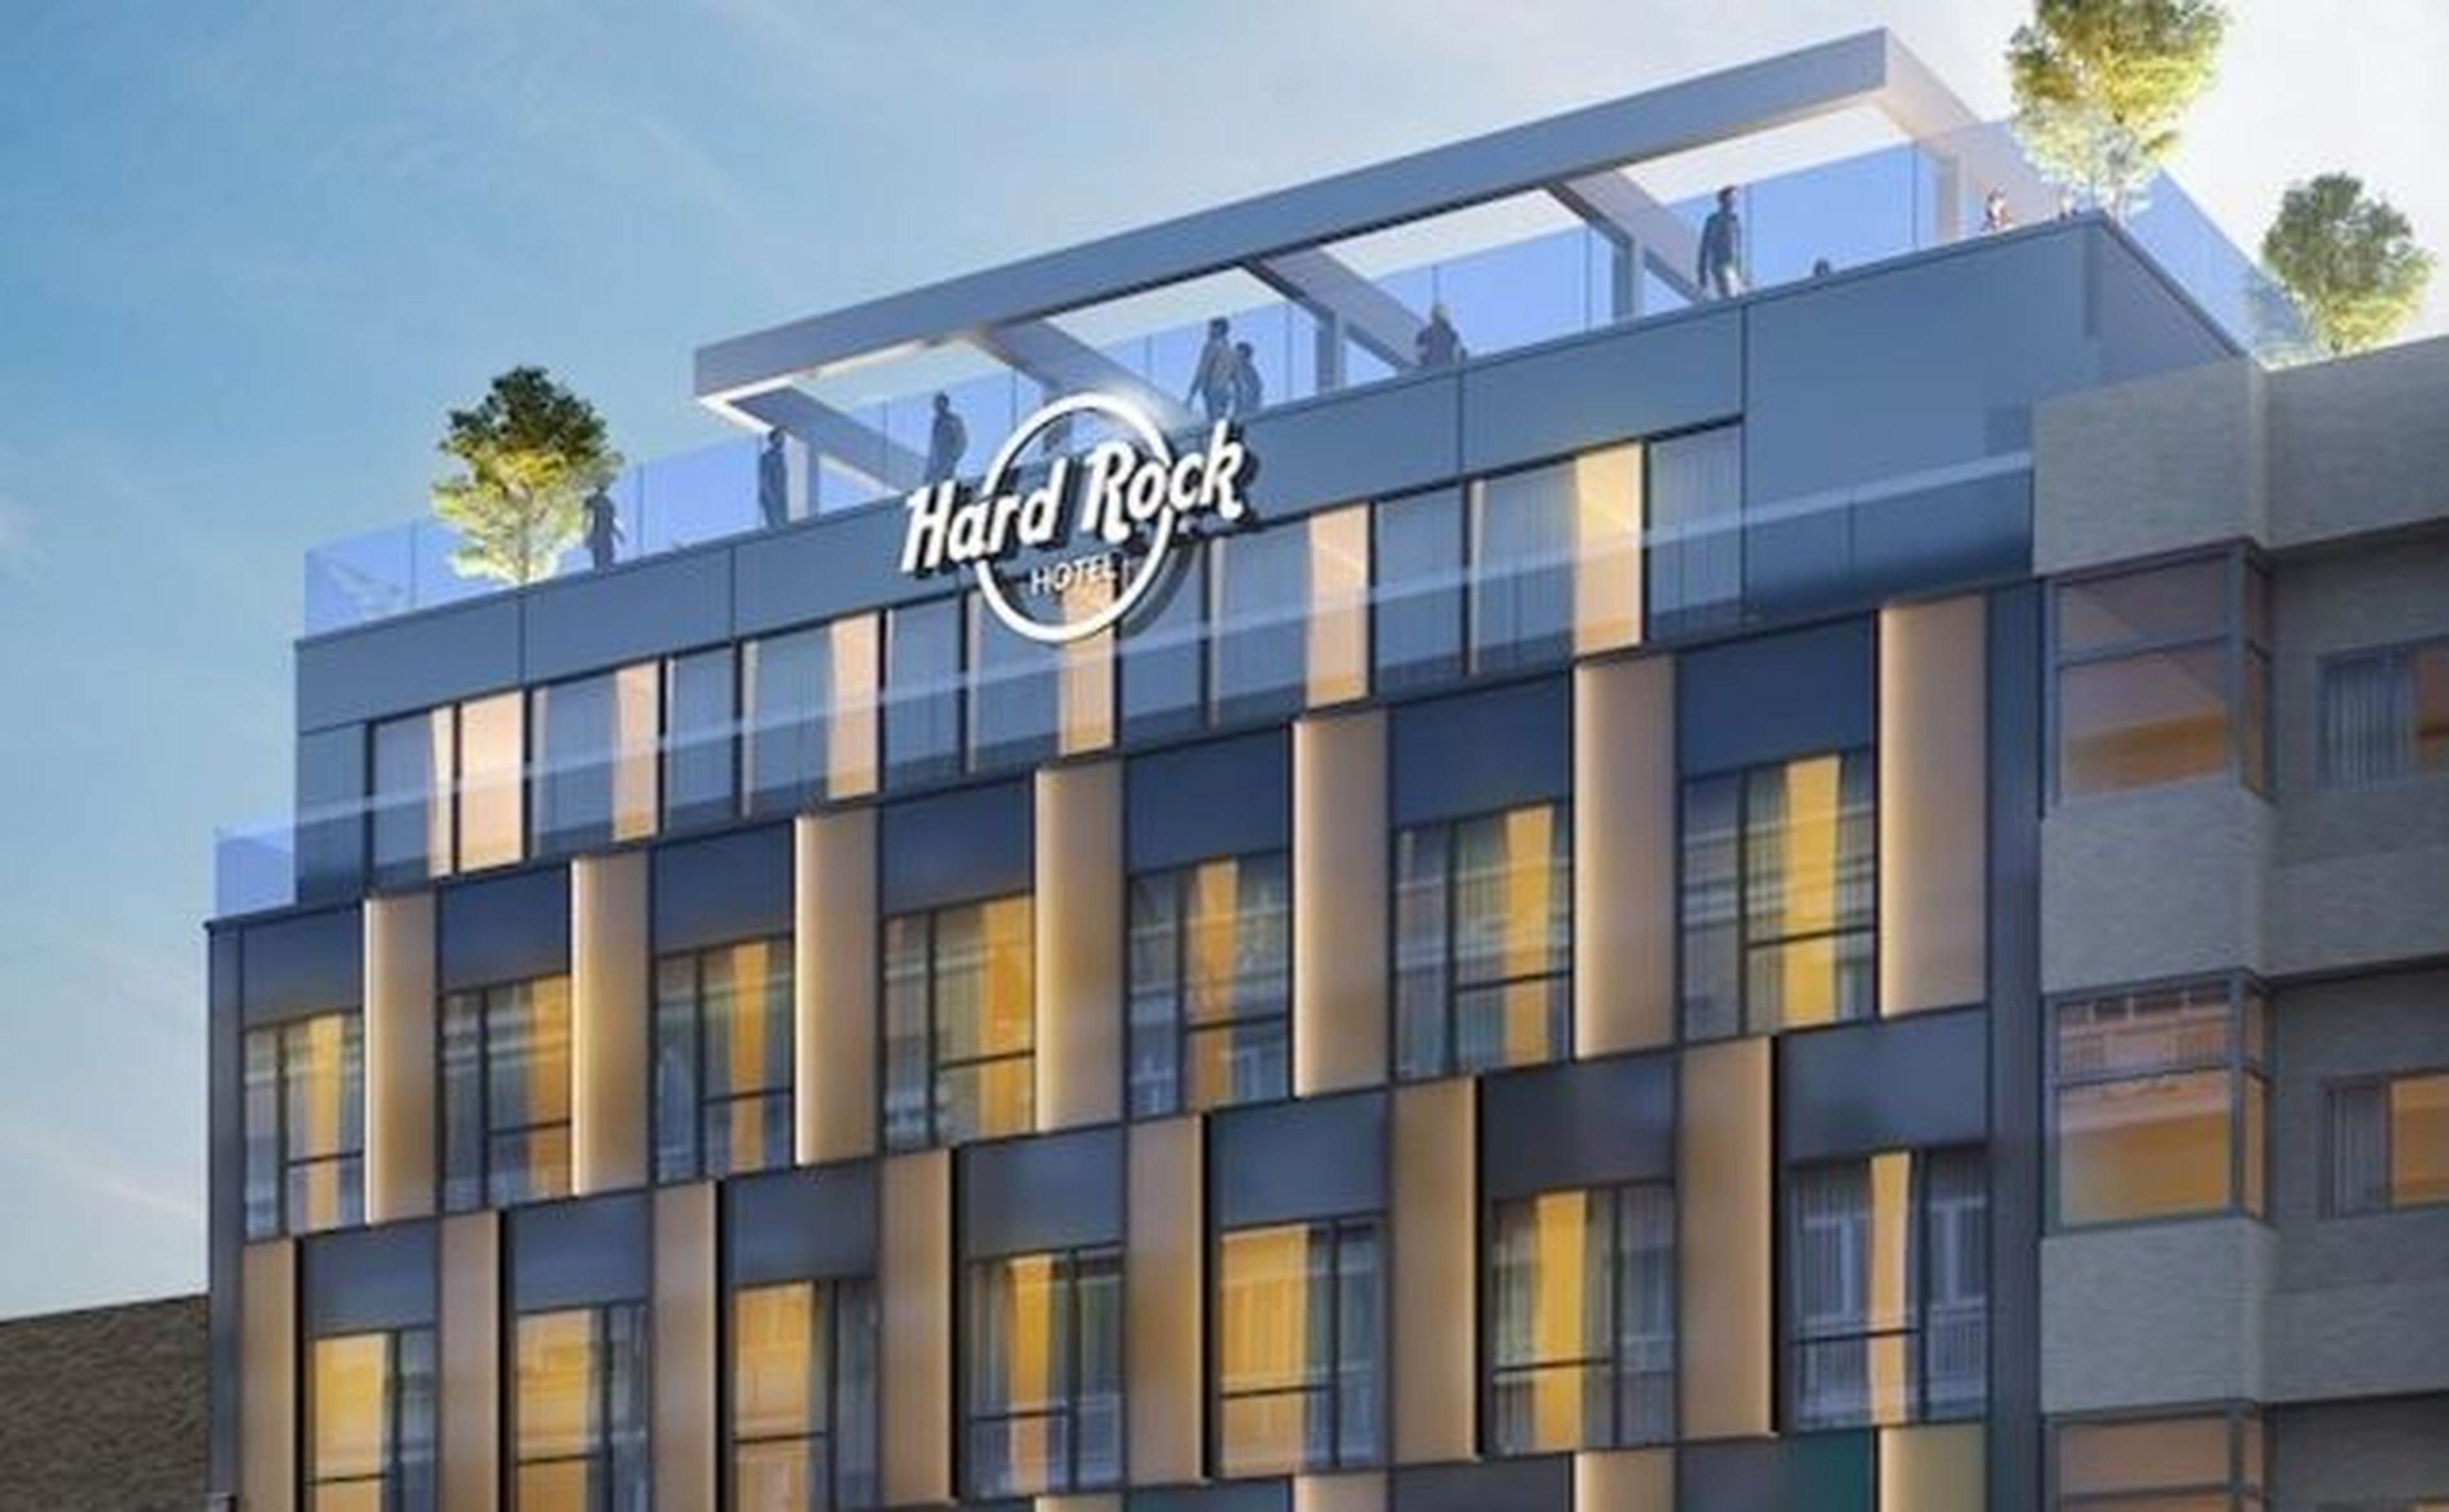 Hard Rock Hotel, la cadena más rockera se suma a la fiebre de aperturas en Madrid